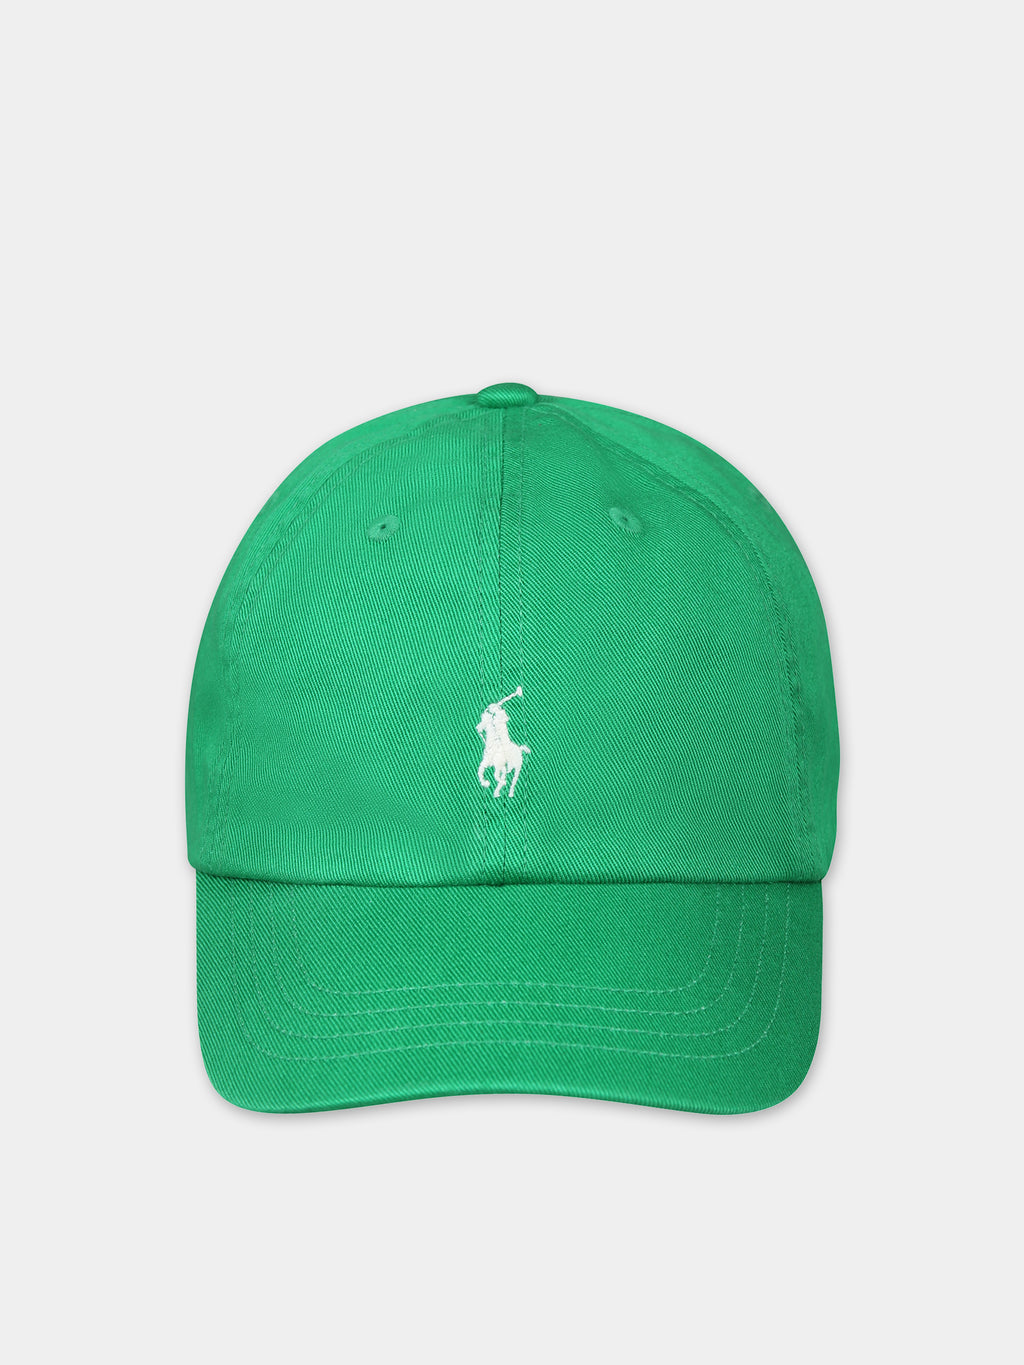 Chapeau vert pour bébé garçon avec poney